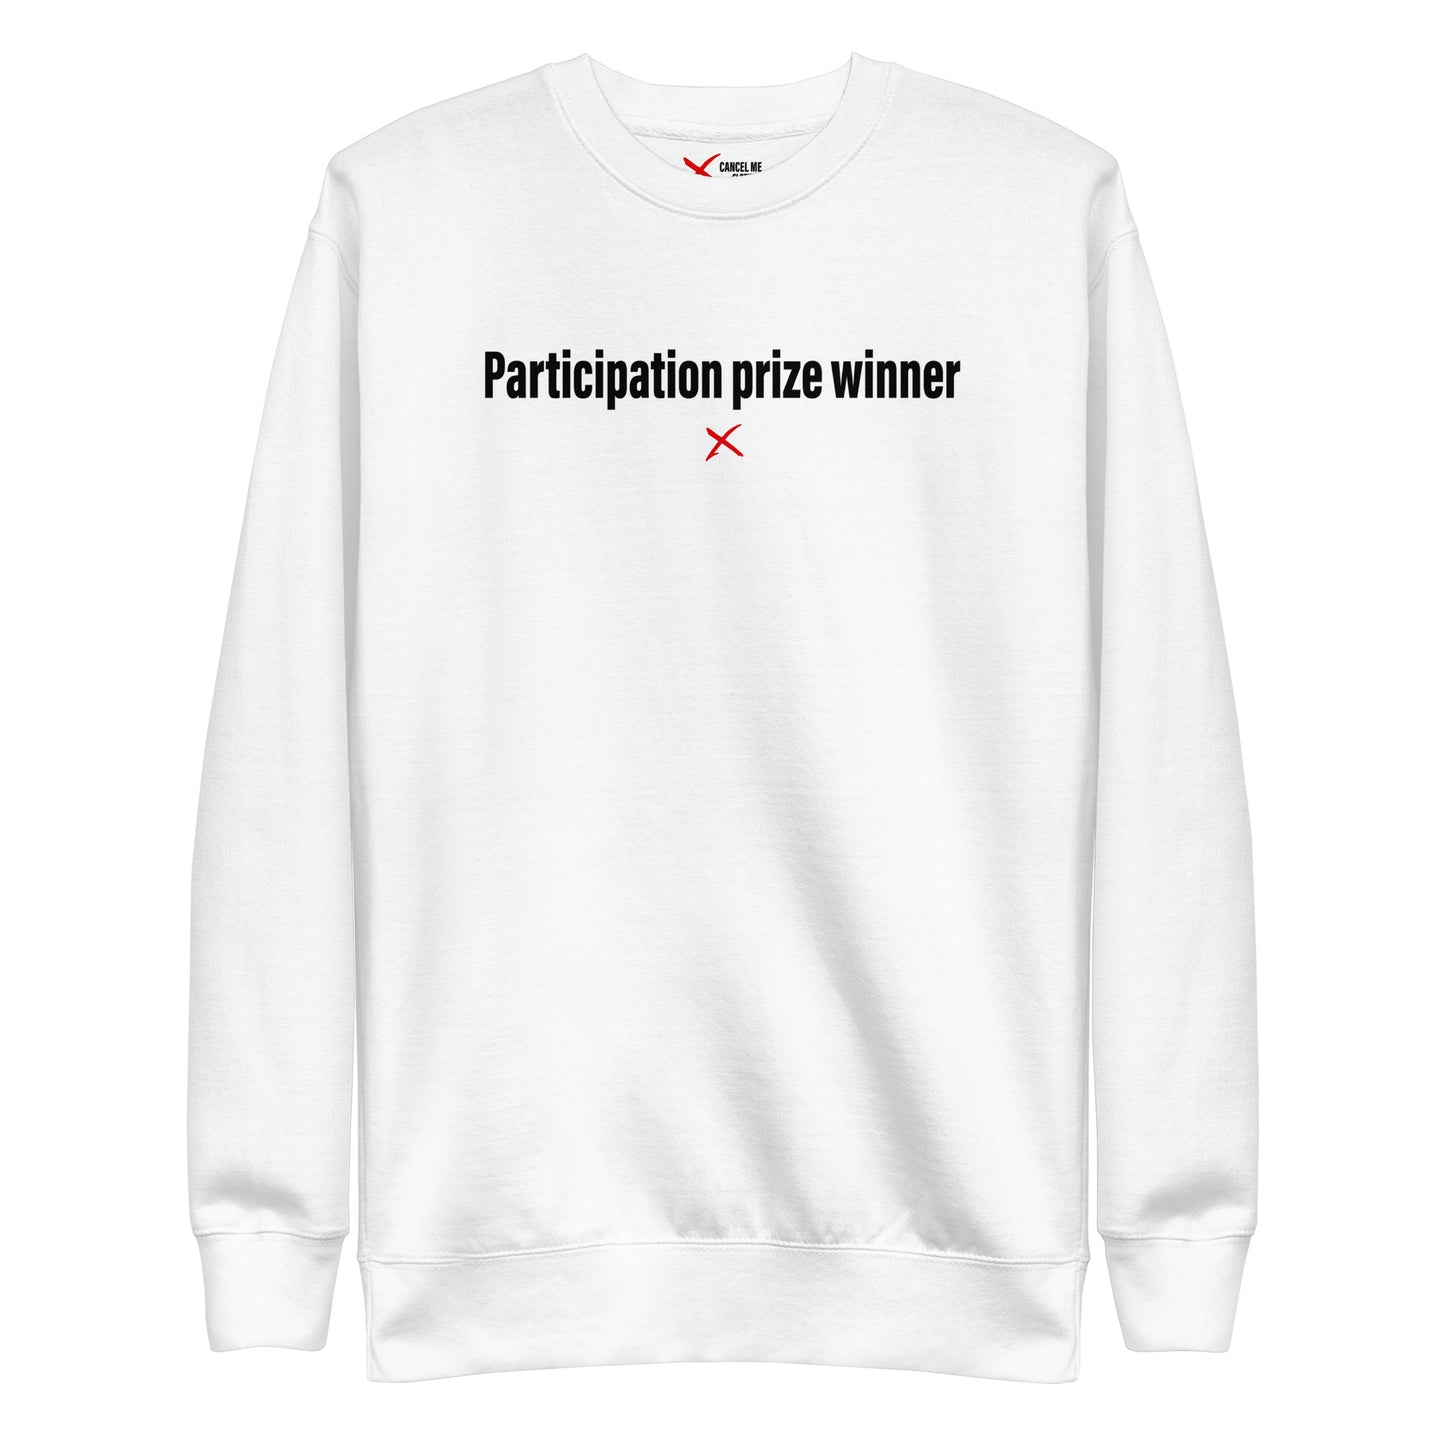 Participation prize winner - Sweatshirt